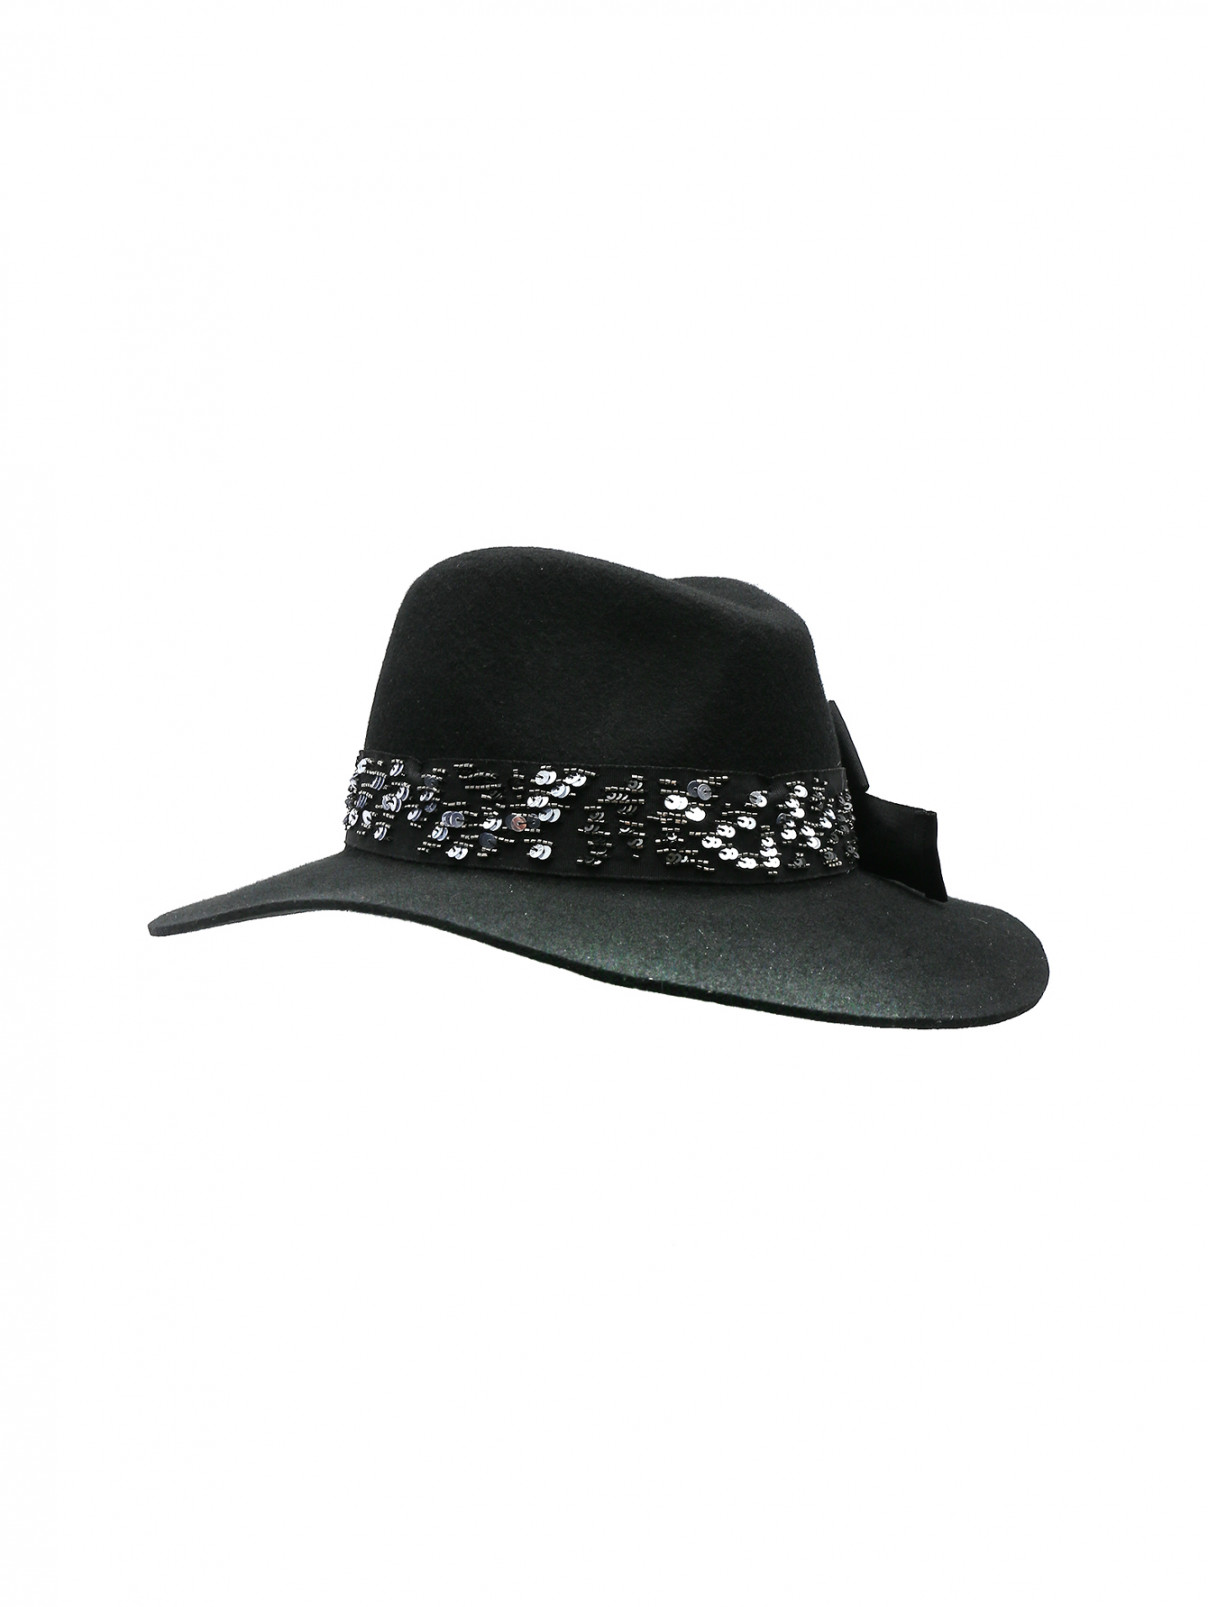 Шляпа Lorena Antoniazzi  –  Общий вид  – Цвет:  Черный